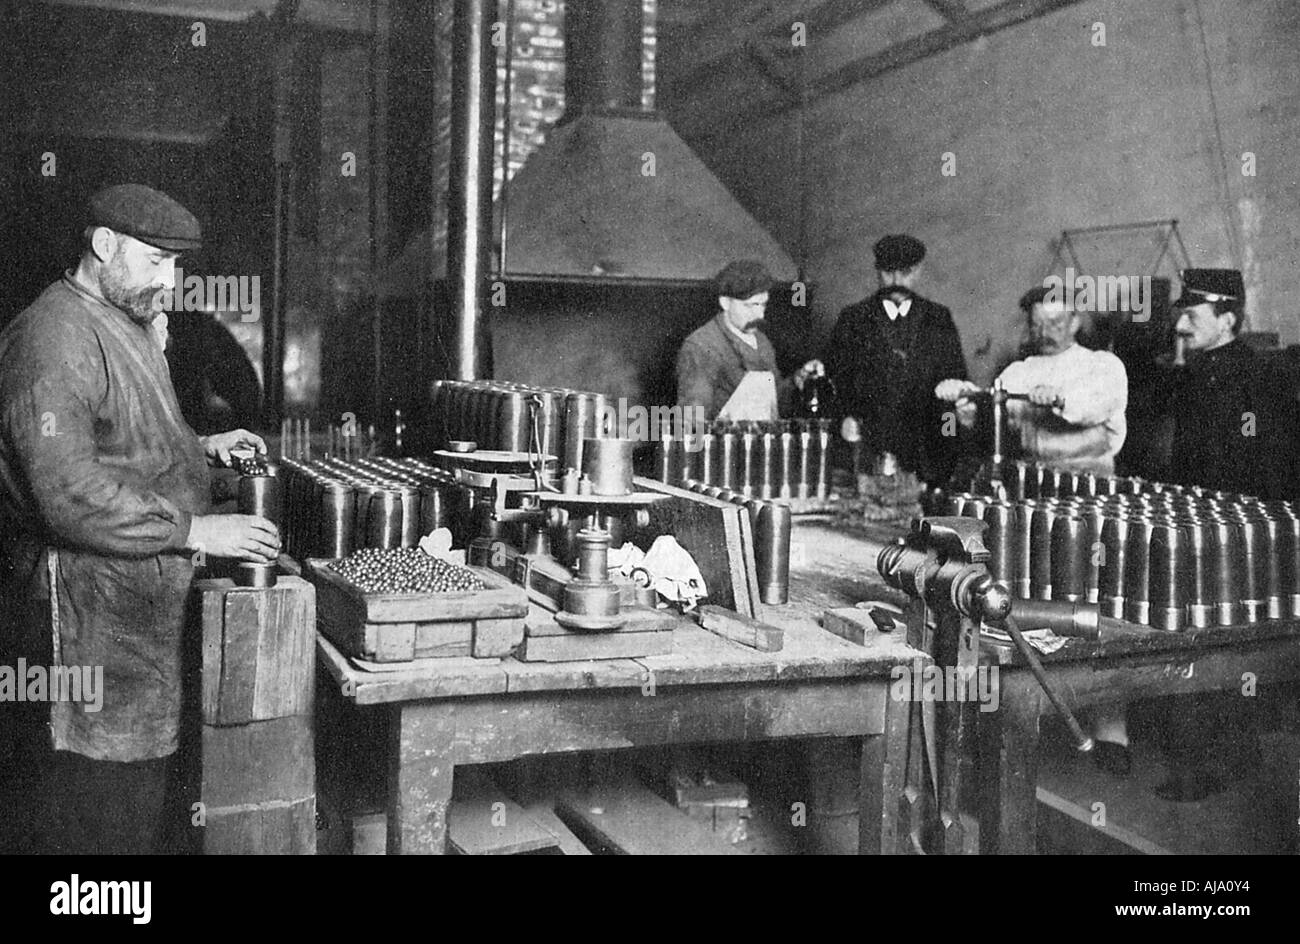 Remplir les coquilles de shrapnel dans une usine de munitions, de la Première Guerre mondiale, 1914-1918. Artiste : Inconnu Banque D'Images